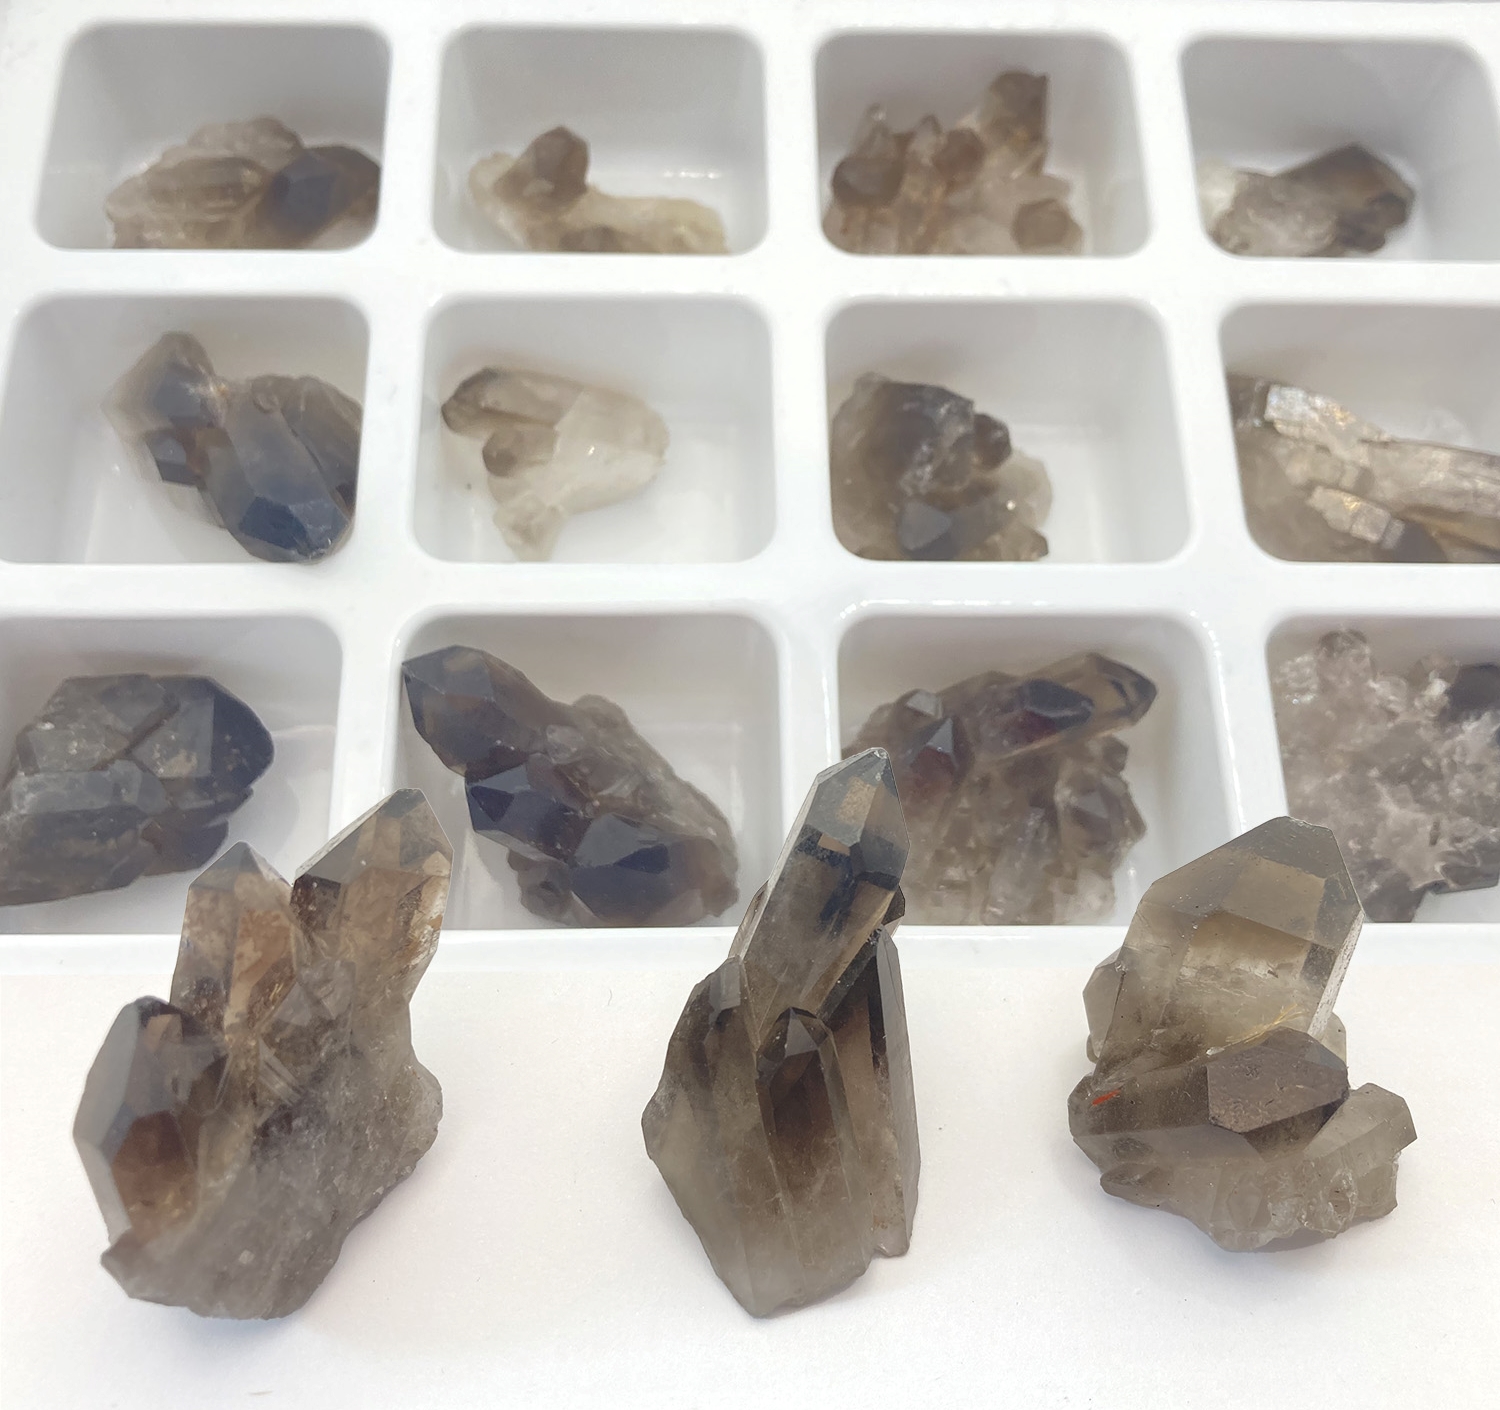 Expositor de 12 piezas cristal de roca ahumada